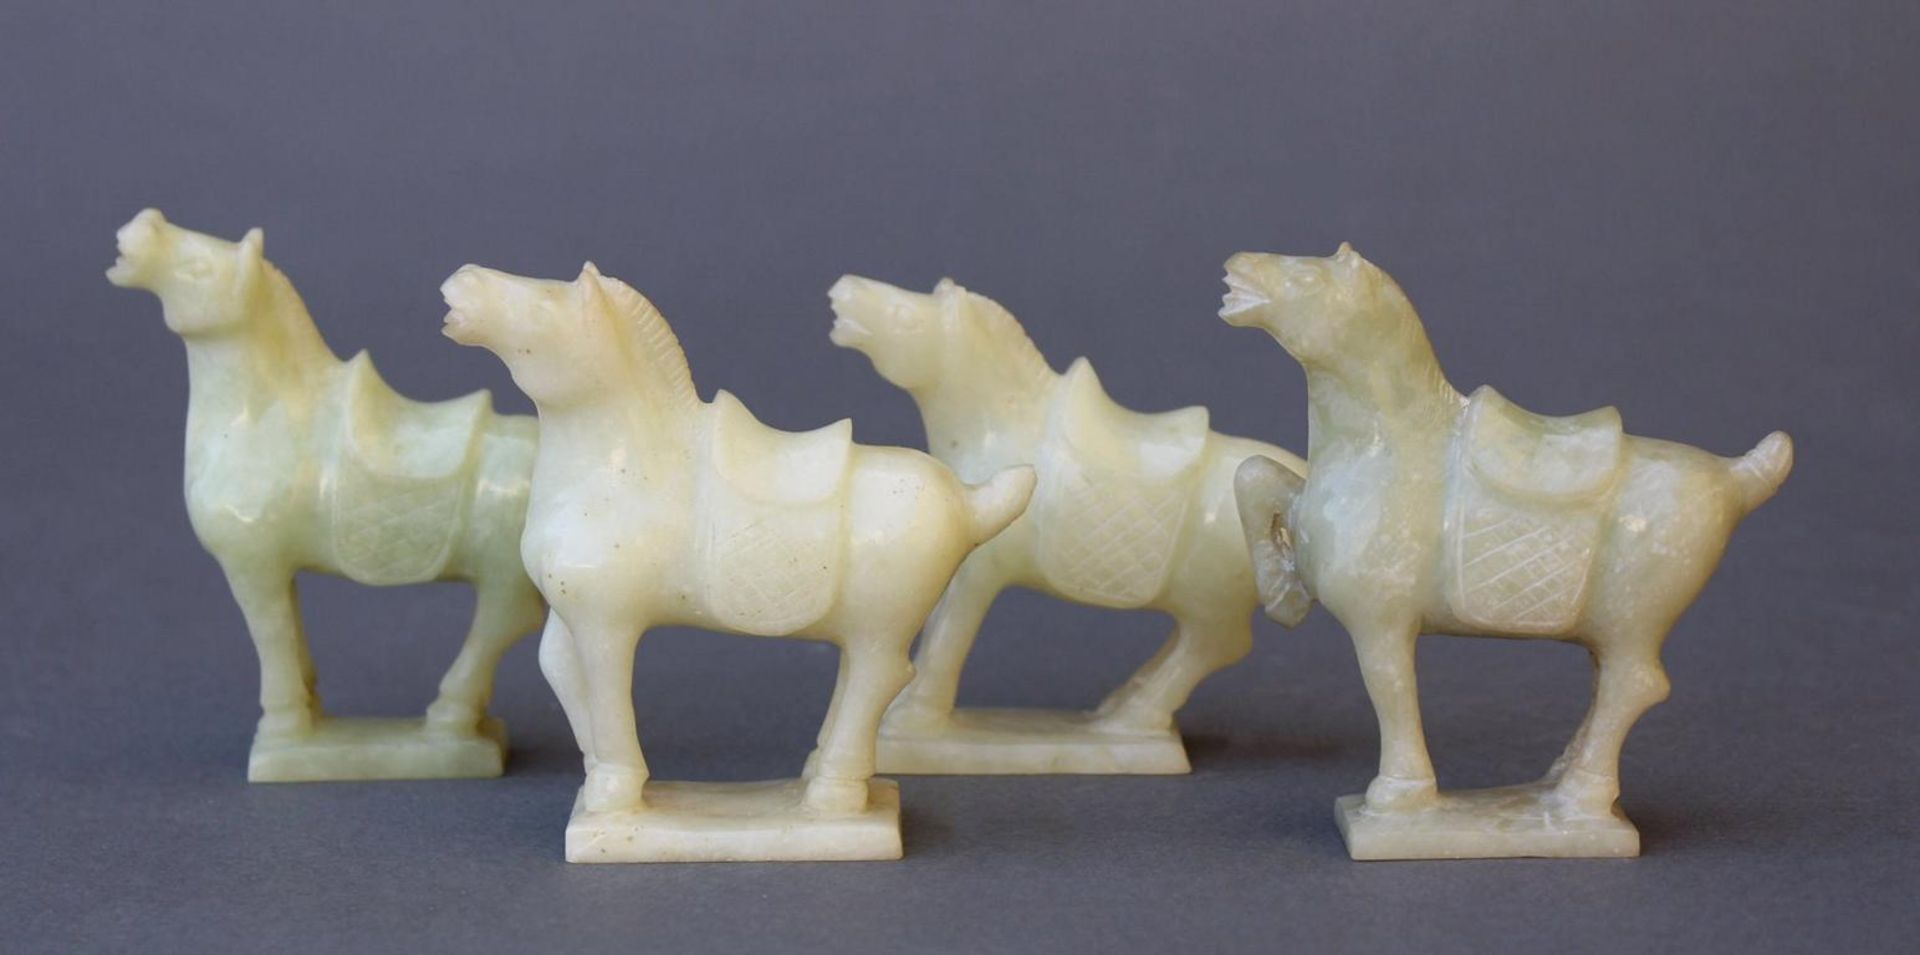 Vier Kleine PferdefigurenChina 20. Jahrhundert, grüne Jade geschnitzt, gesatteltes Pferd auf - Bild 2 aus 3